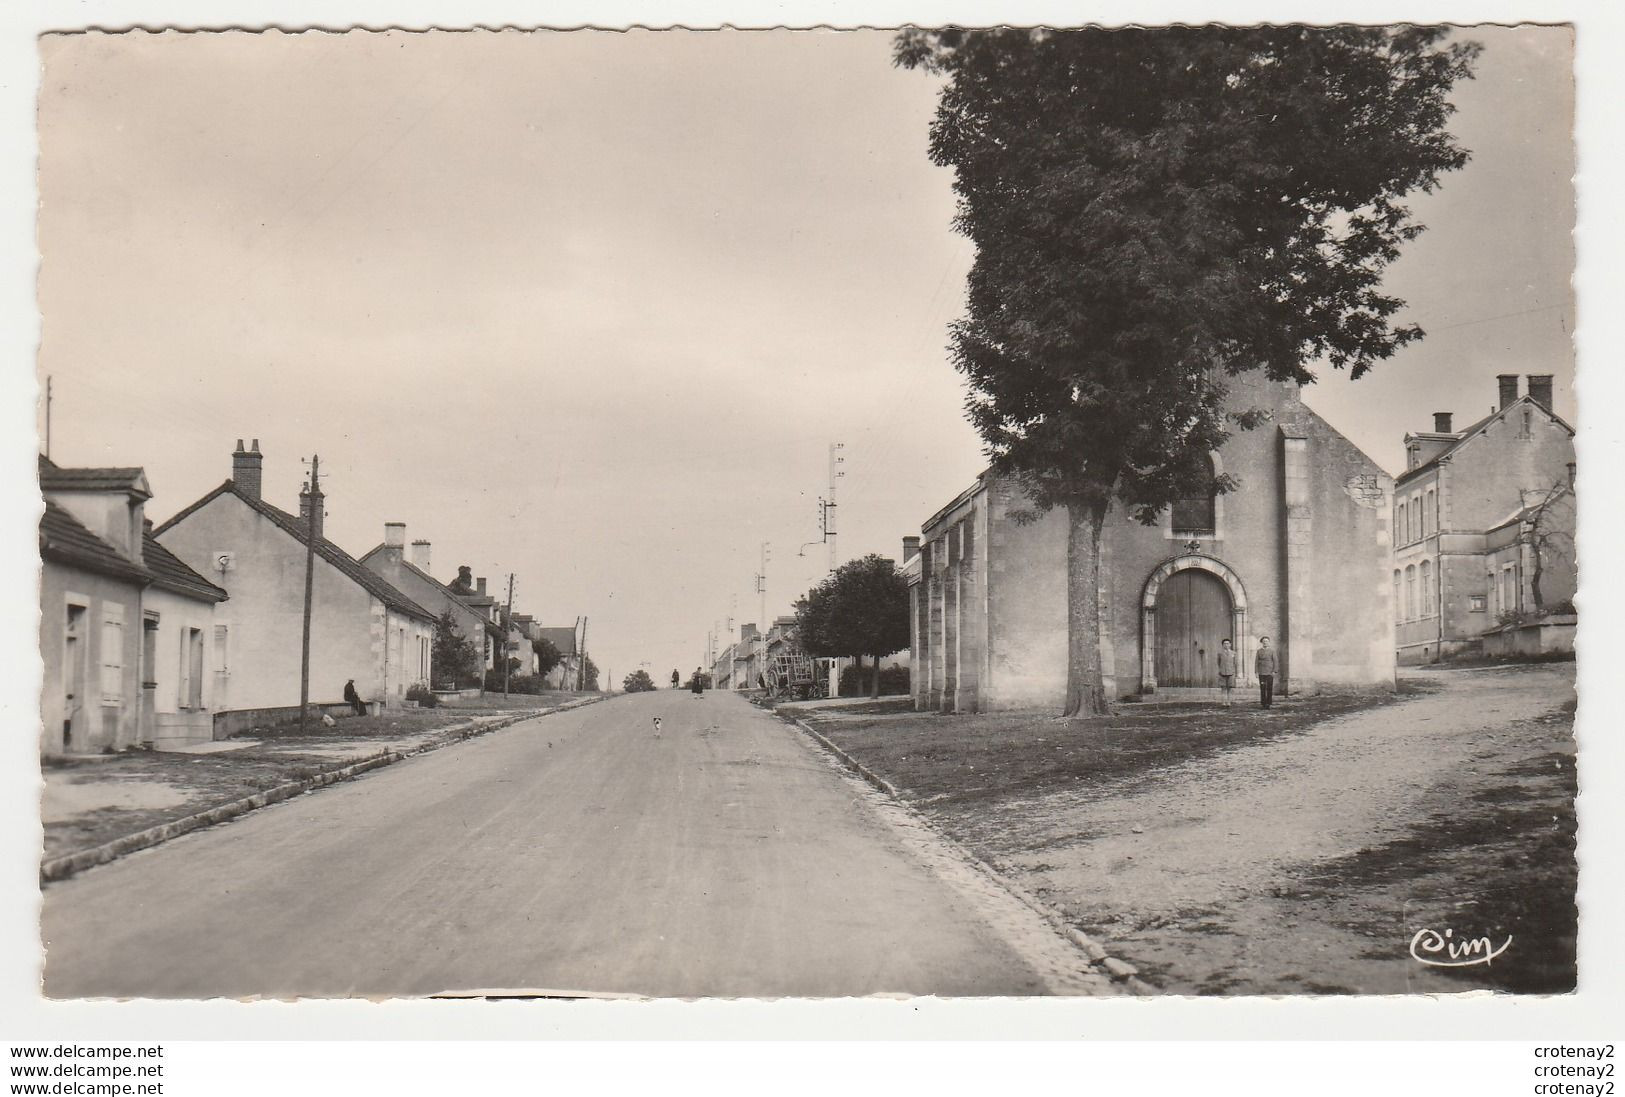 18 GROSSOUVRE Vers Sancoins La Guerche Sur L'Aubois Rue Principale En 1952 Chien Sur Route 2 Personnes Devant L'Eglise - La Guerche Sur L'Aubois